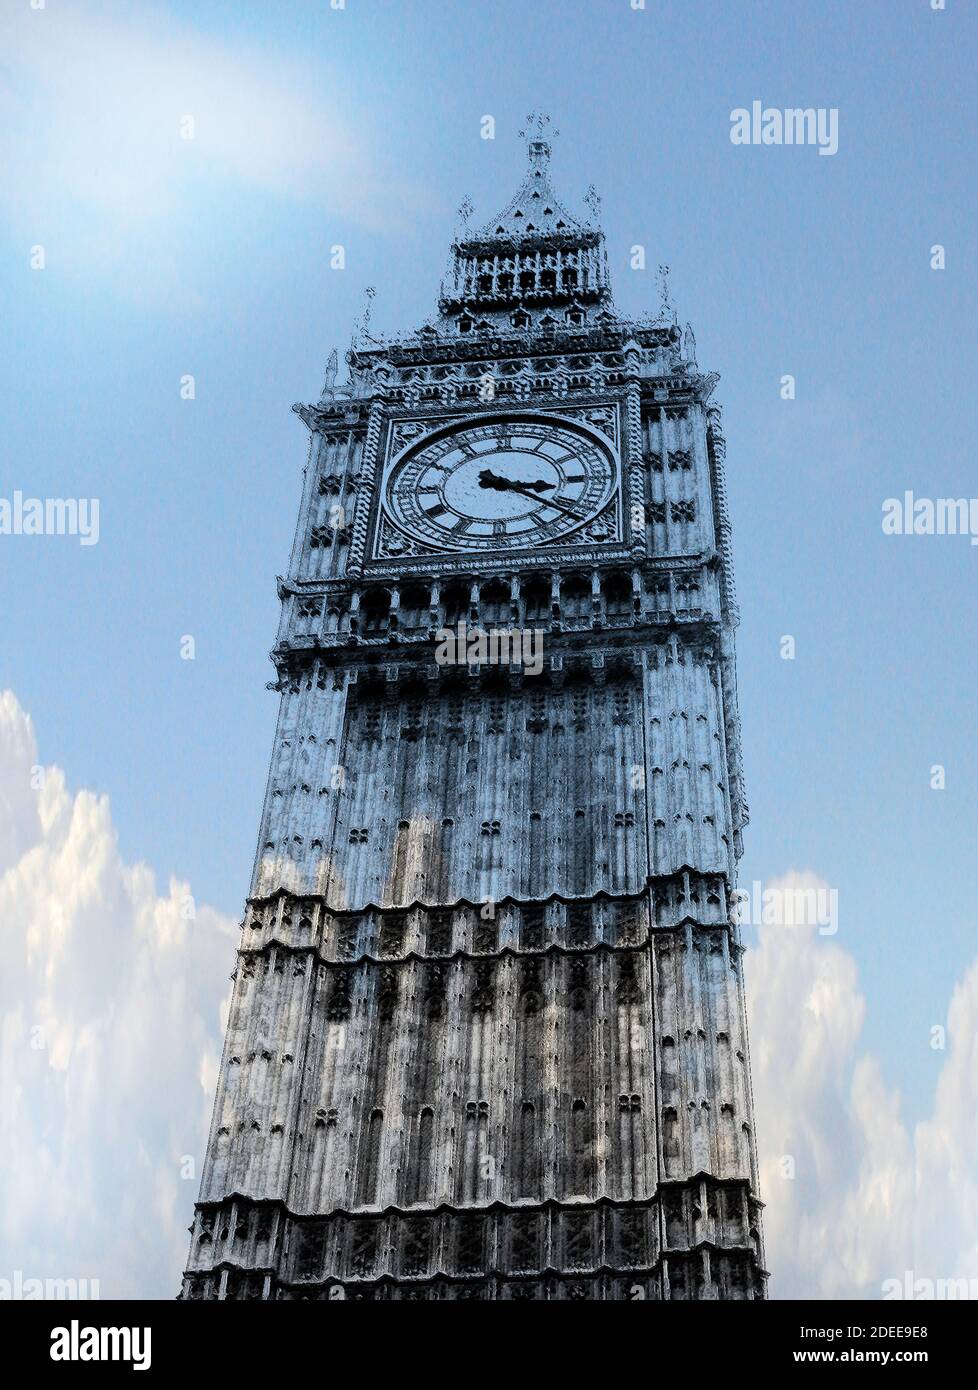 Big ben AKA la Grande Campana dell'impressionante orologio, estremità nord del Palazzo di Westminster, Londra questa illustrazione immagina la torre come fatta di vetro Foto Stock